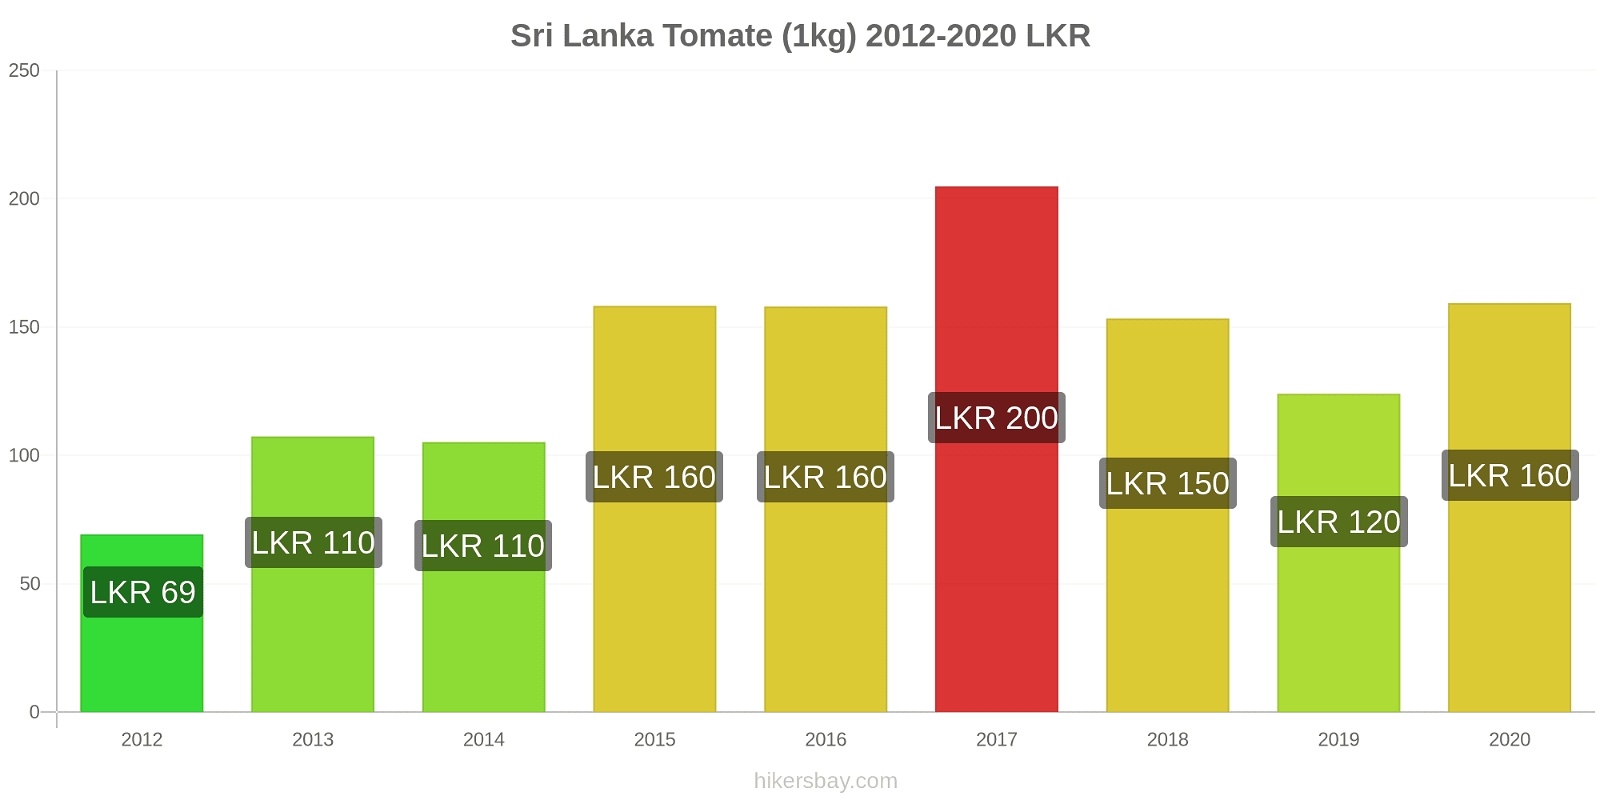 Sri Lanka cambios de precios Tomate (1kg) hikersbay.com